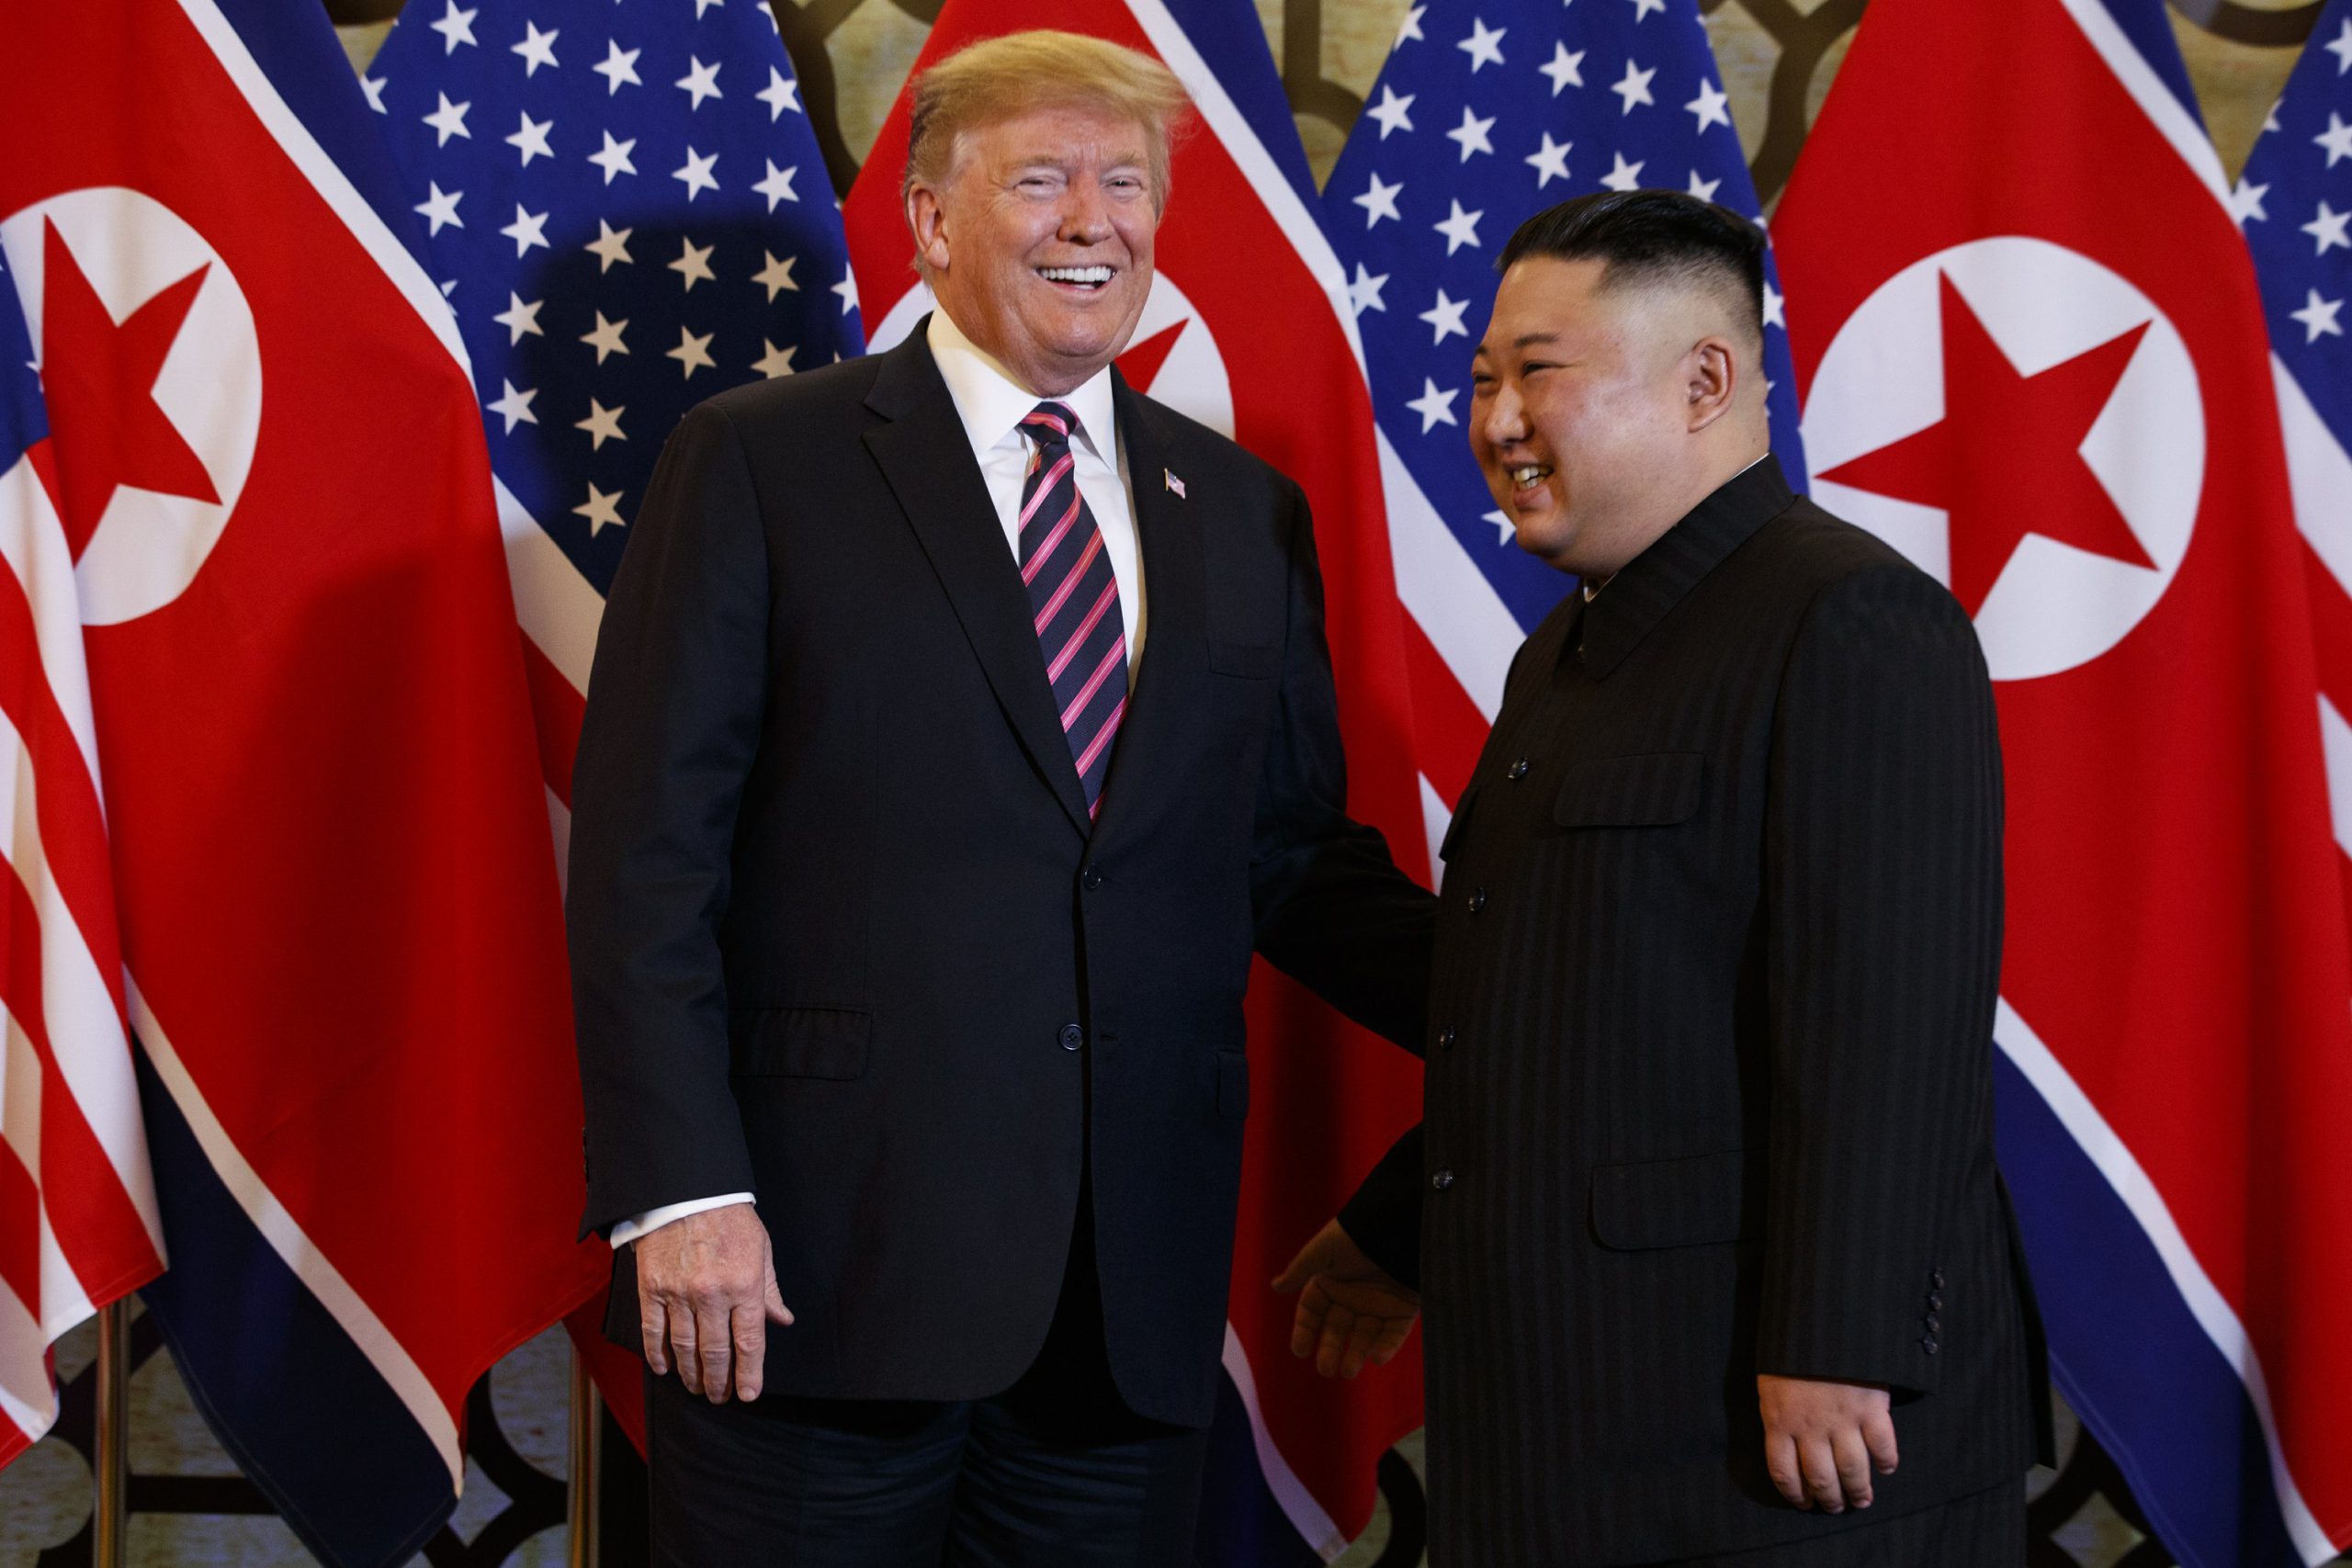  Trump, despre Kim: Și-a ucis unchiul şi i-a plasat trupul pe scări. Capul i-a fost tăiat şi pus pe piept